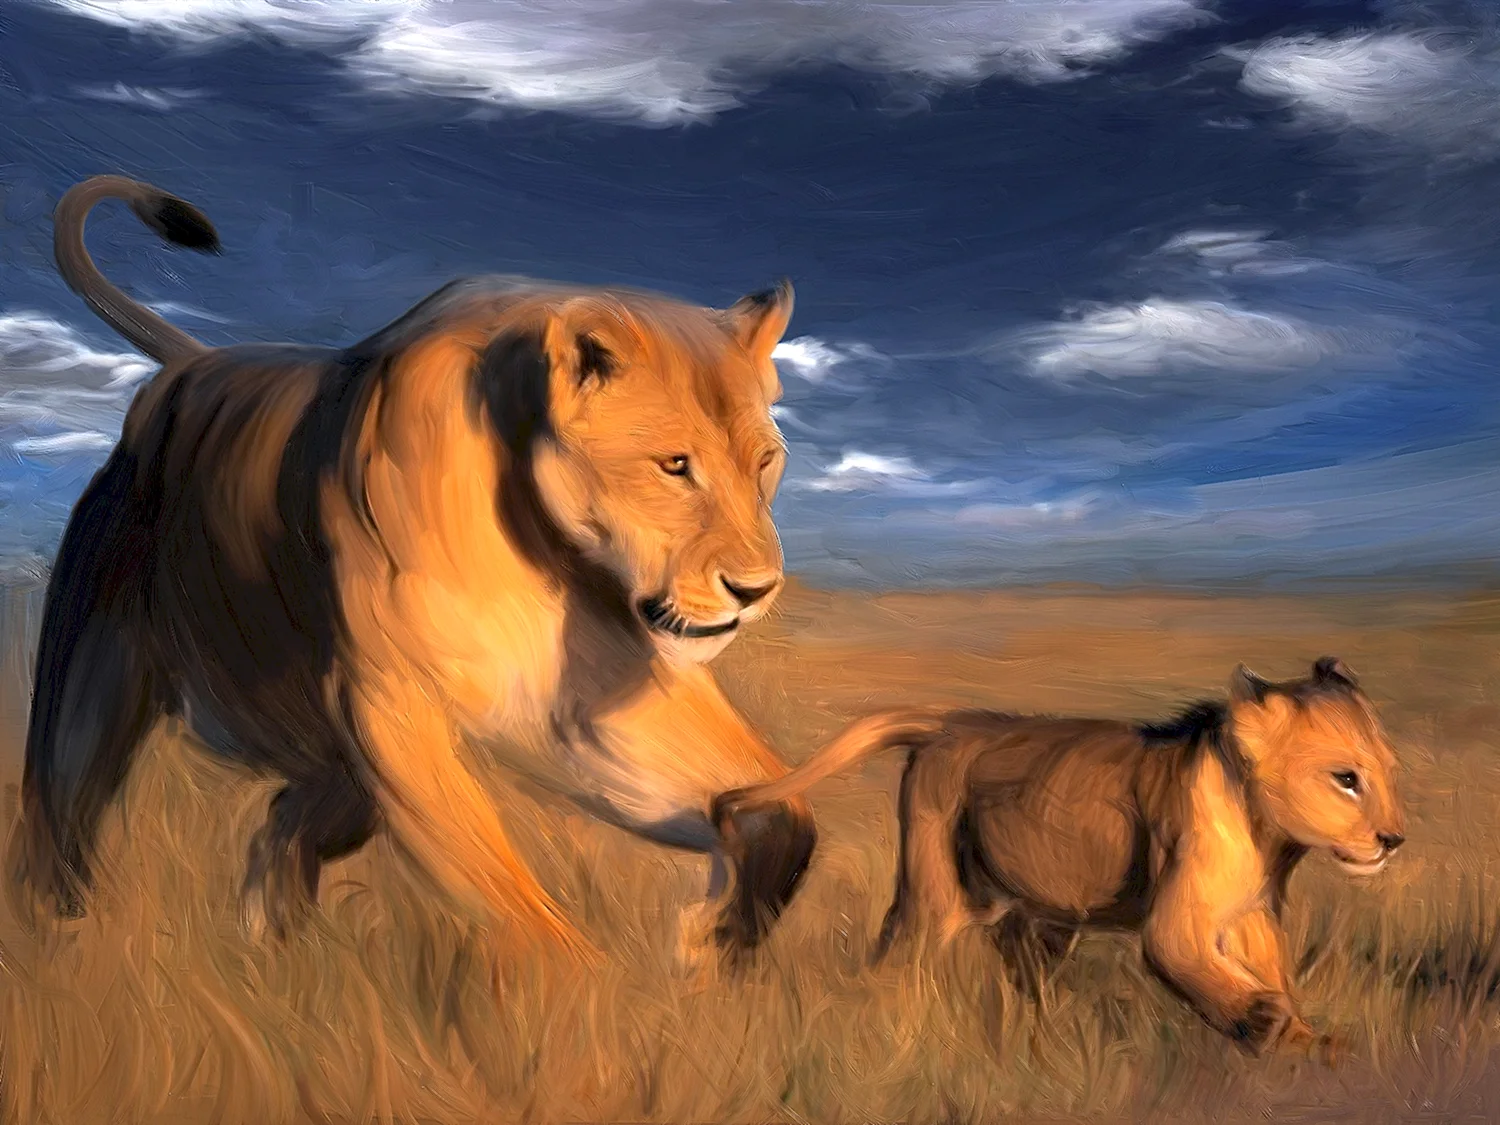 Лев и львица в саванне